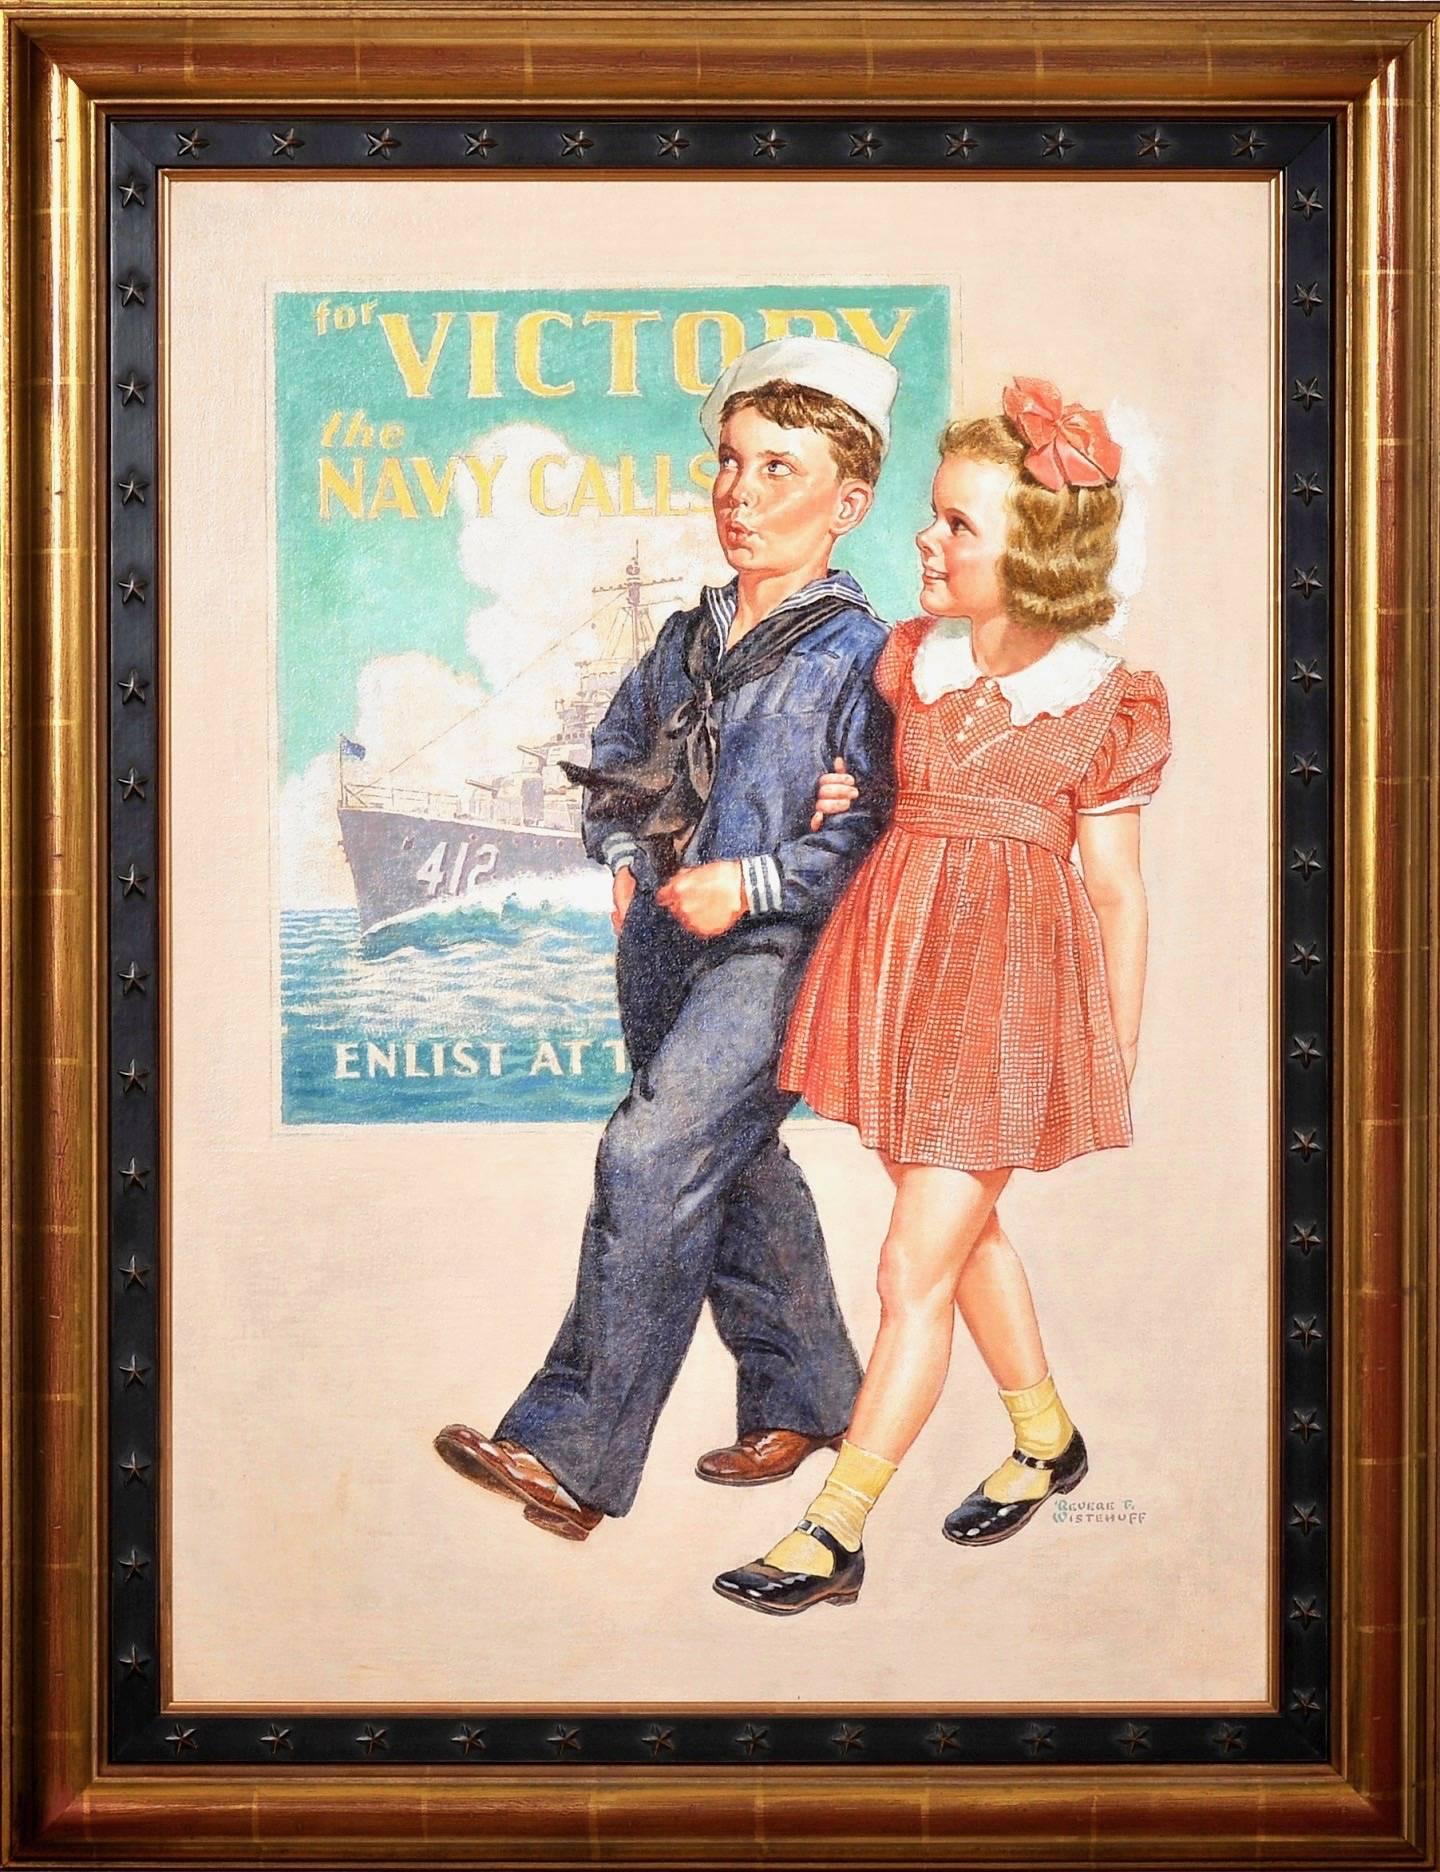 Für den Sieg ruft die Marine (Sonstige Kunststile), Painting, von Revere Wistehuff